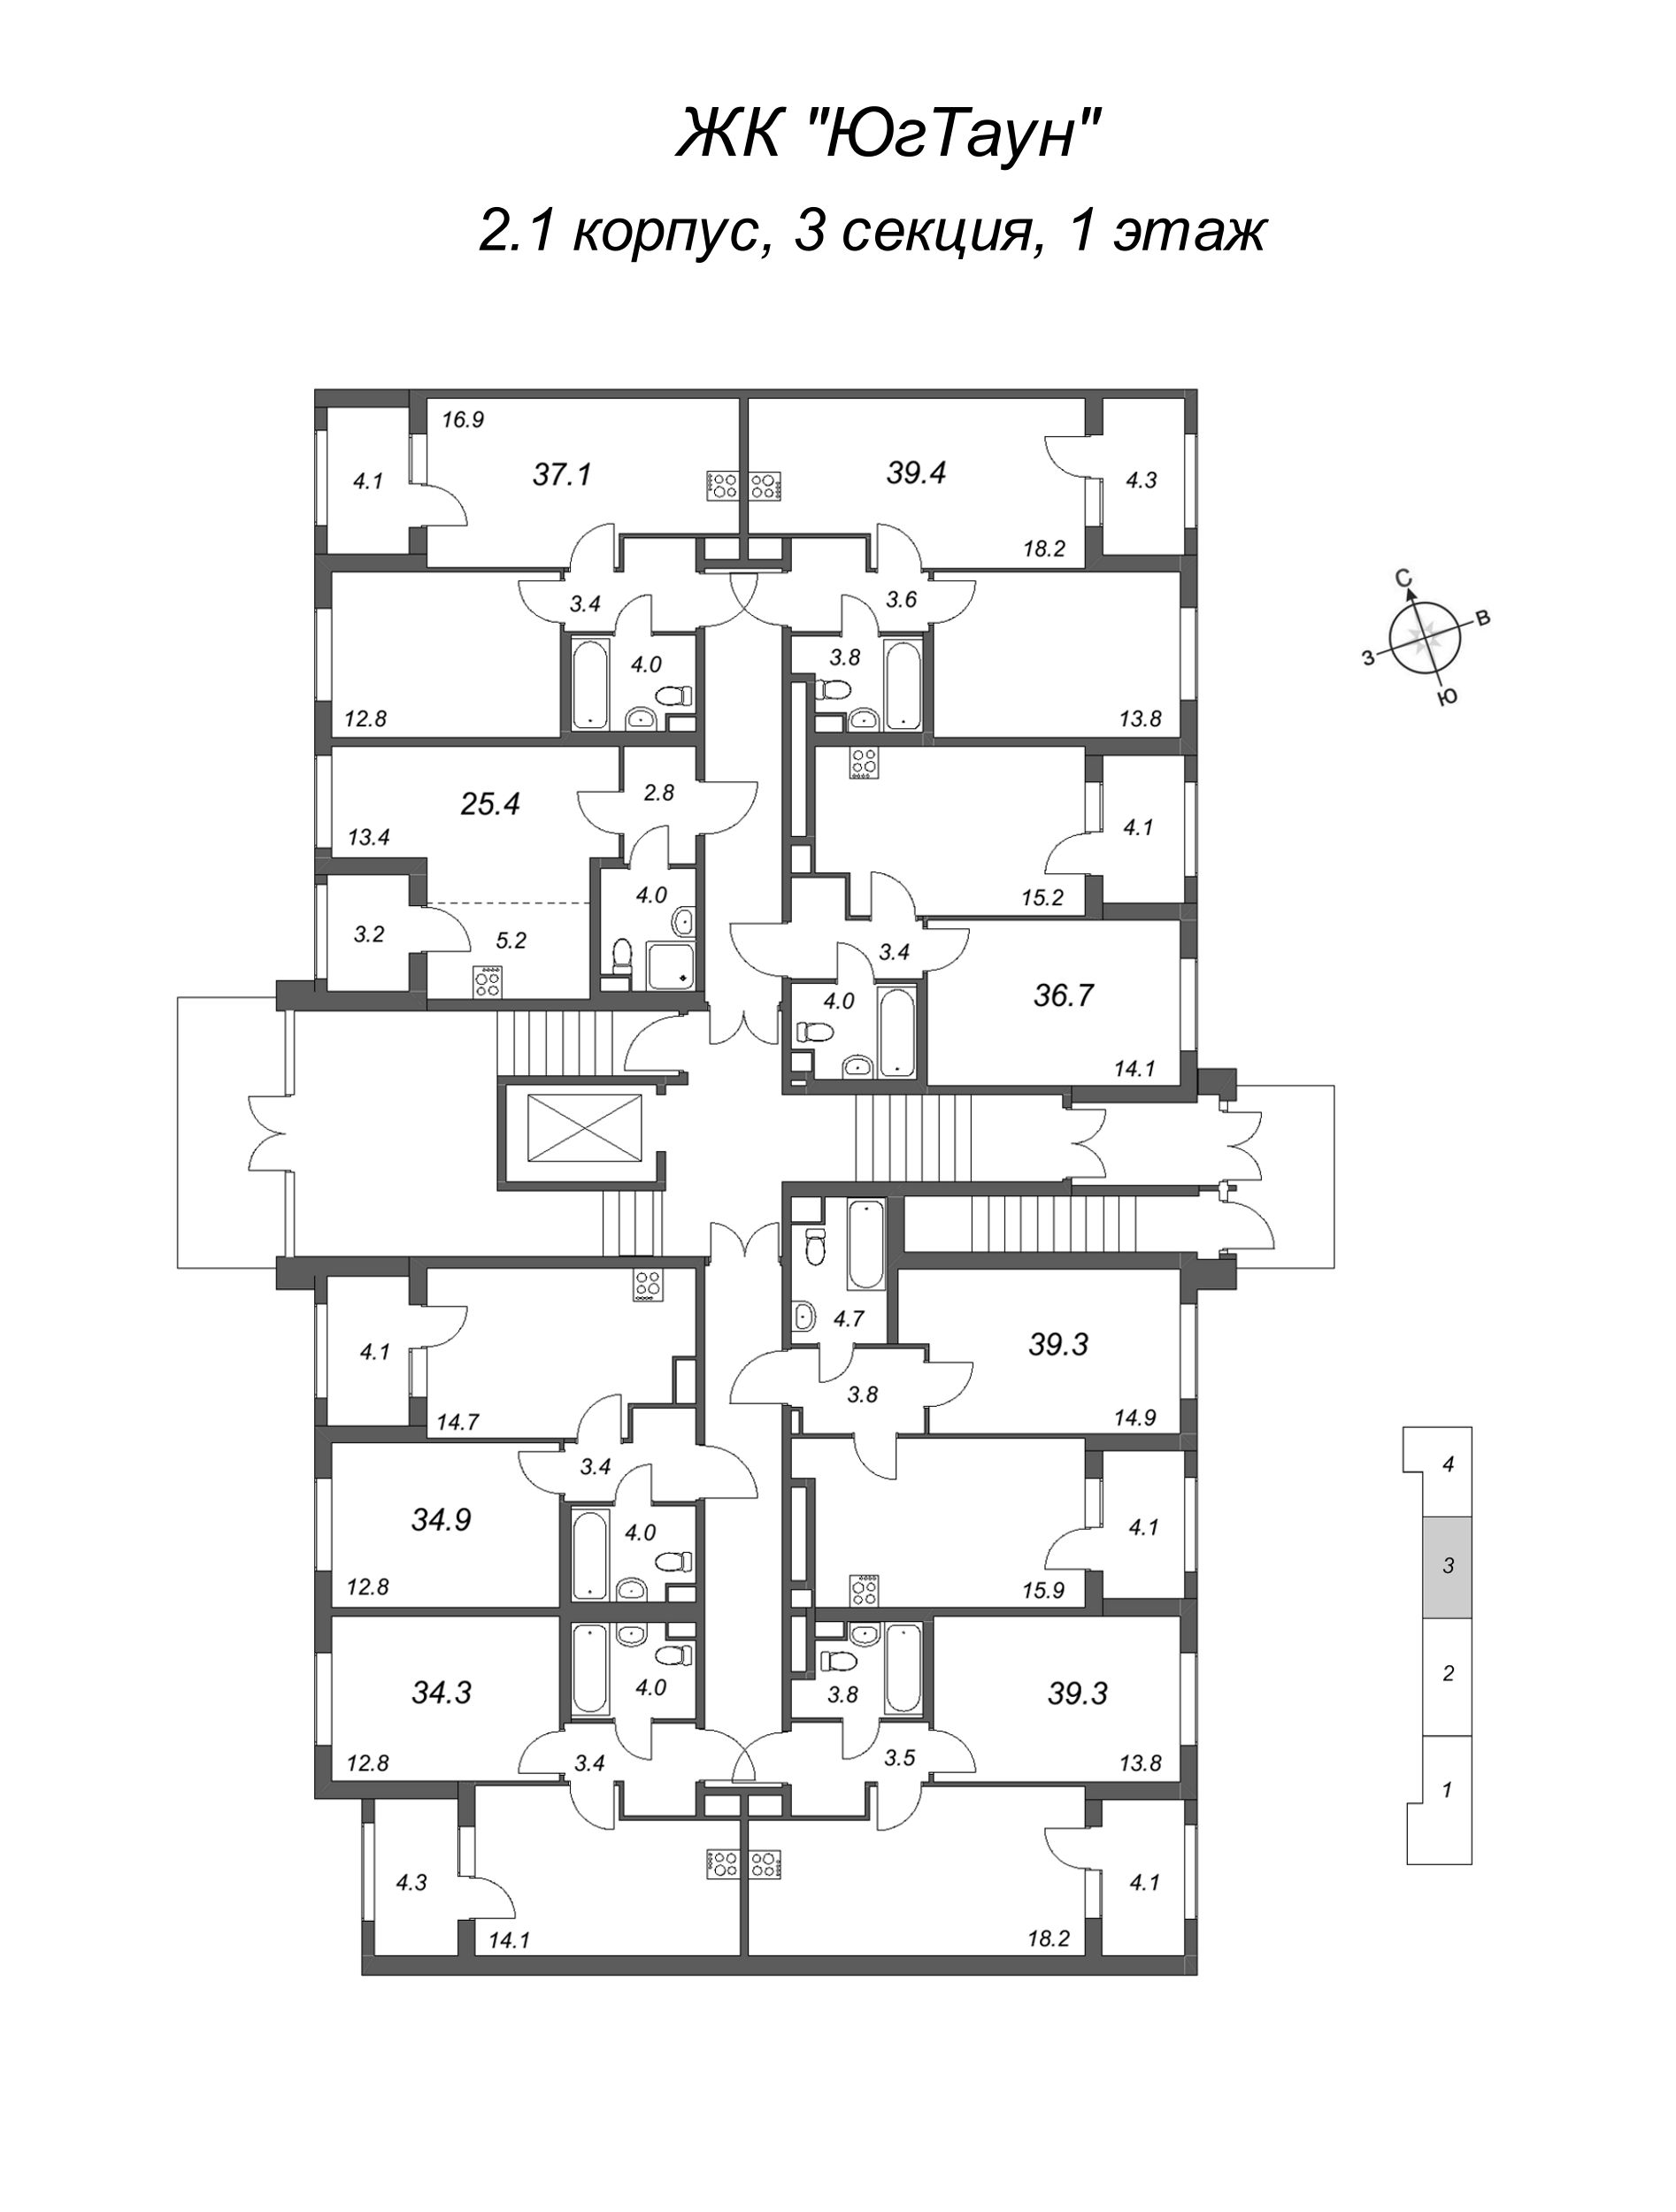 2-комнатная (Евро) квартира, 37.1 м² в ЖК "ЮгТаун" - планировка этажа